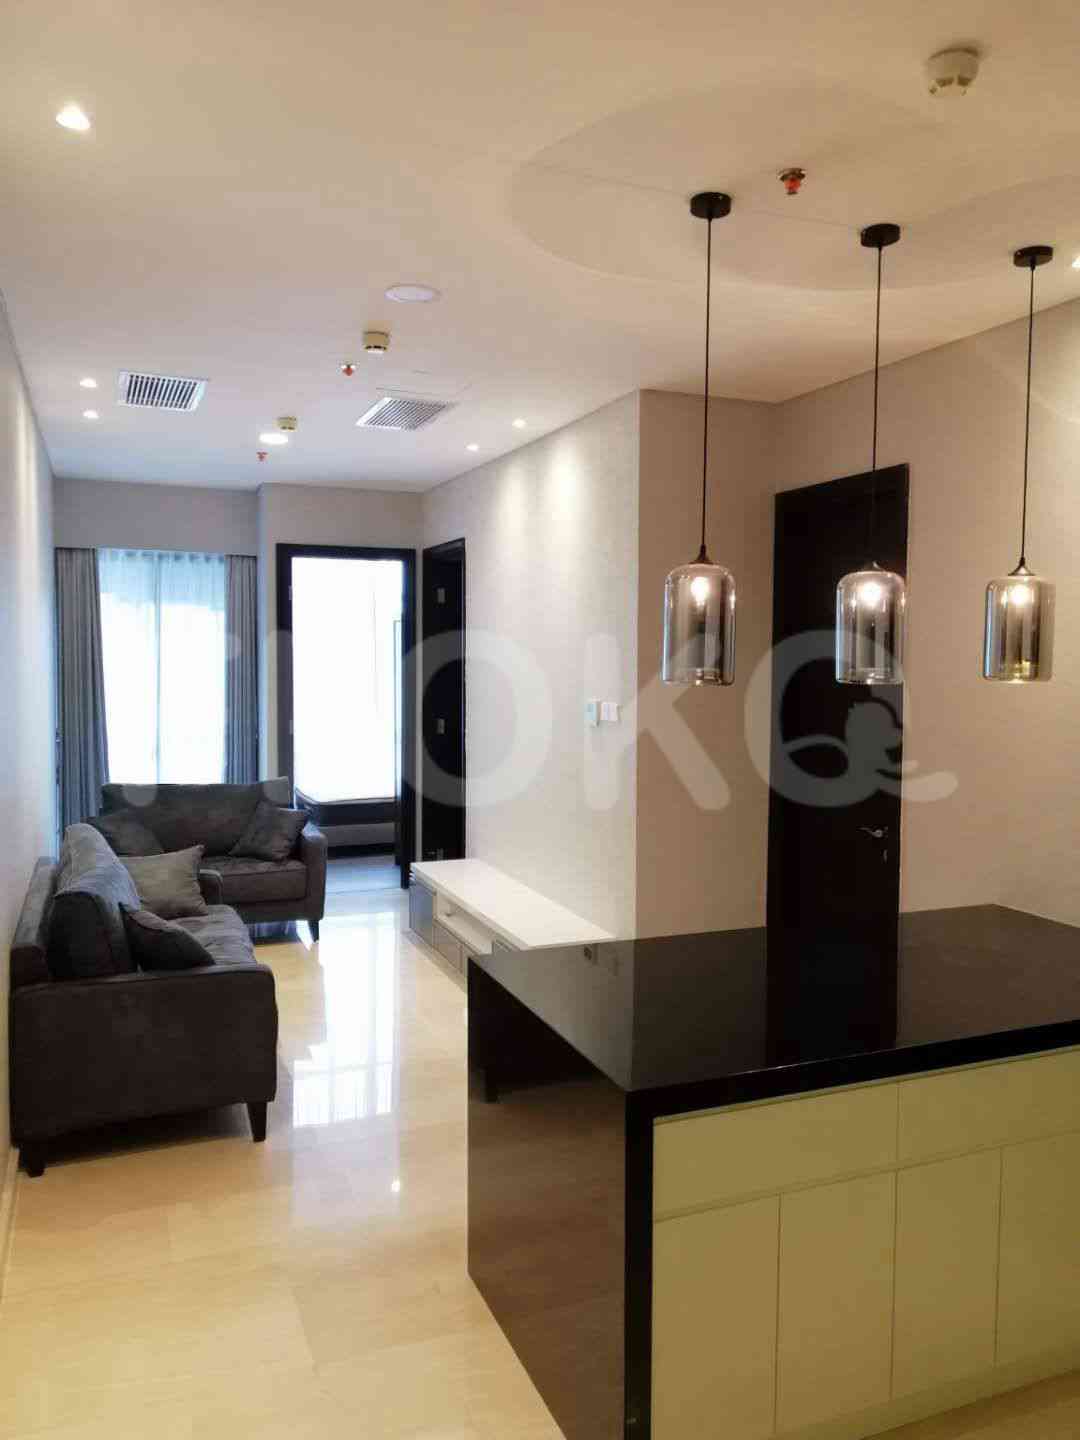 2 Bedroom on 18th Floor for Rent in Sudirman Suites Jakarta - fsu69e 9